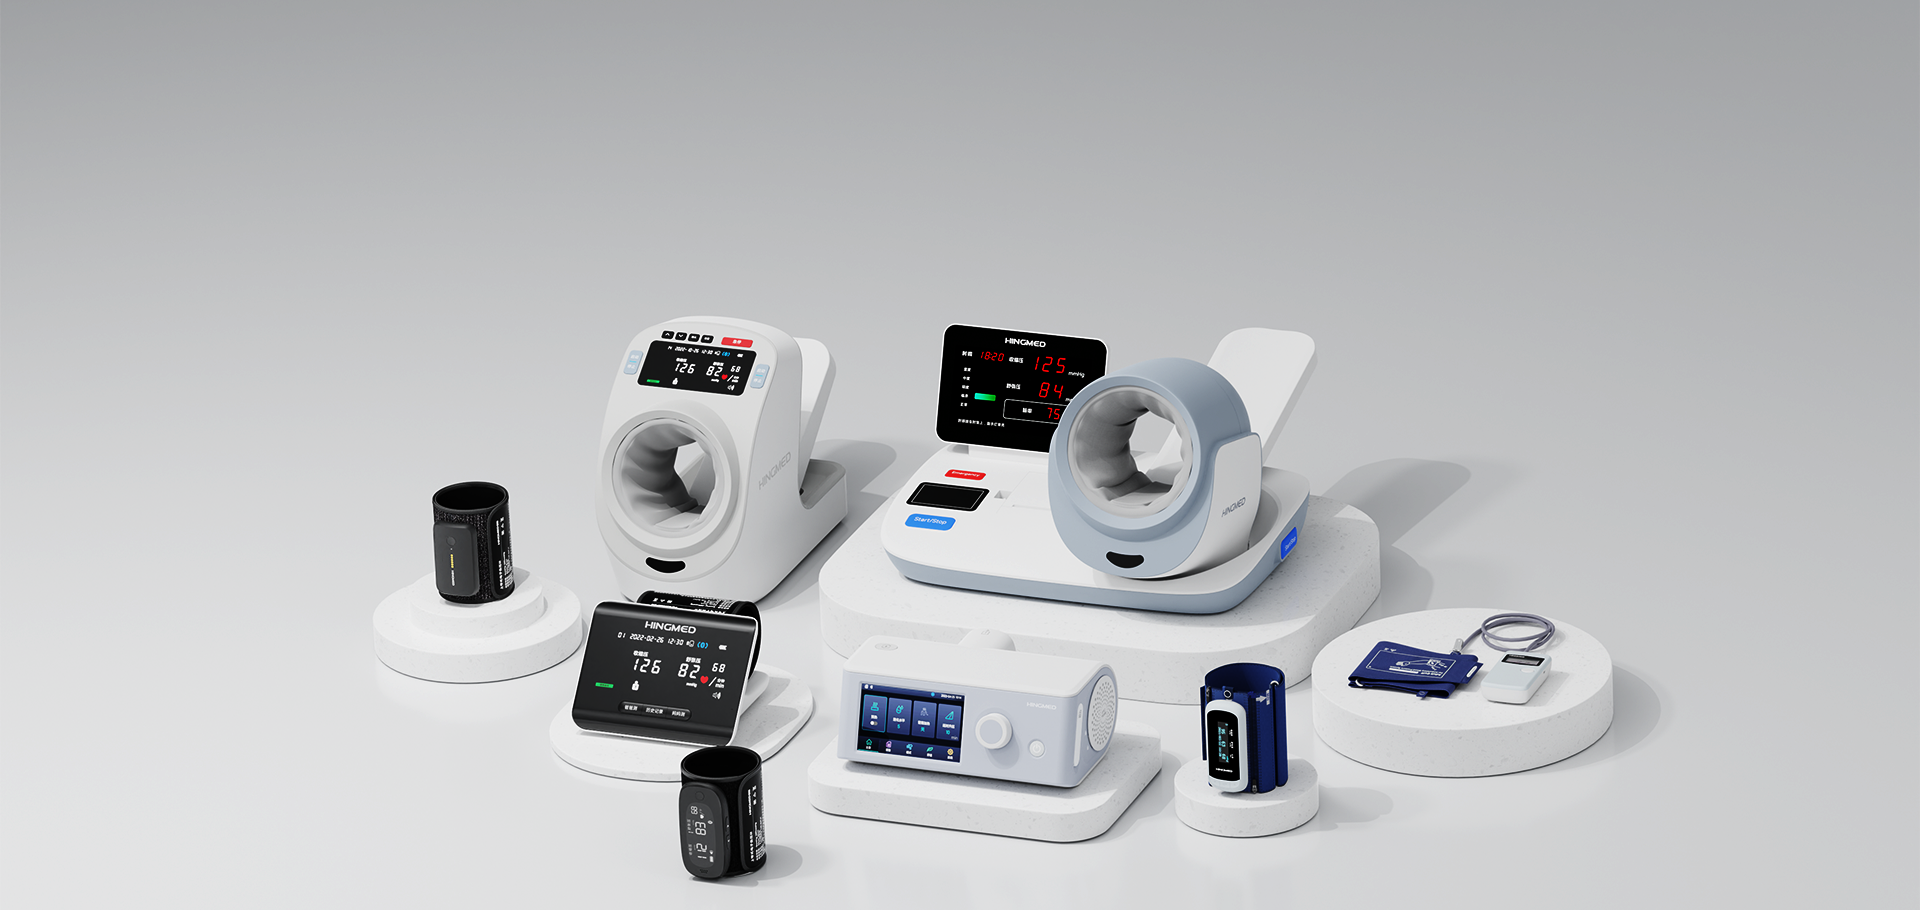 致力于提供先进的血压监测与呼吸技术与产品